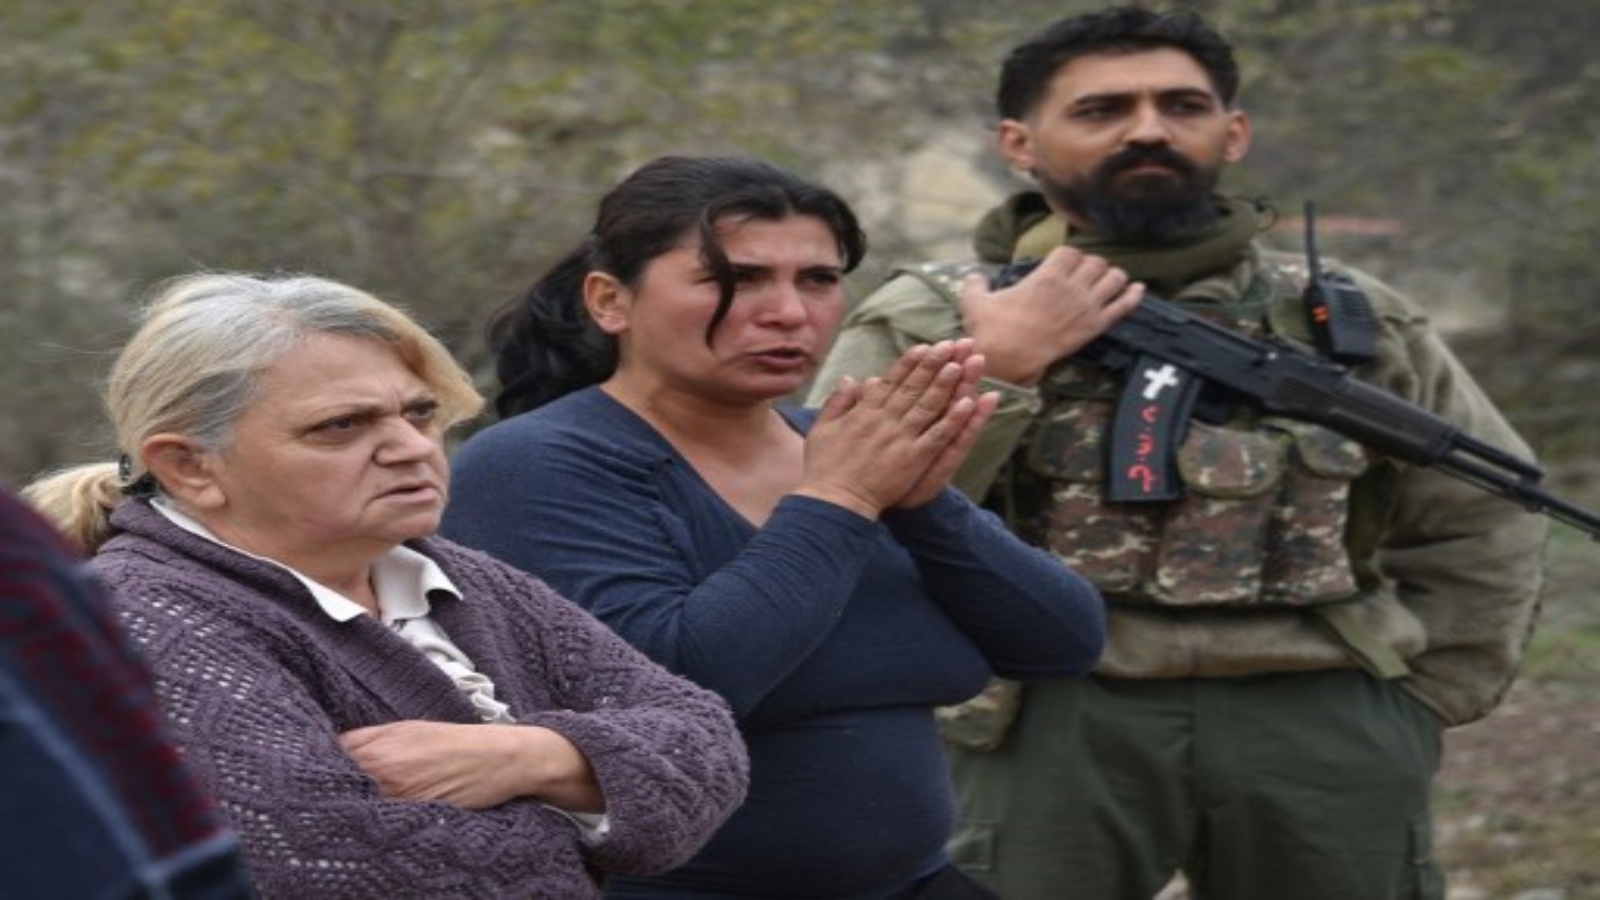 نساء يقفن بجانب قروي متطوع يرتدي زي الجيش المموه ويحملن بندقية كلاشينكوف في دورية في قرية زابوكس بالقرب من ممر لاتشين في 26 نوفمبر 2020 ، بعد ستة أسابيع من القتال بين أرمينيا وأذربيجان حول منطقة ناغورنو كاراباخ المتنازع عليها